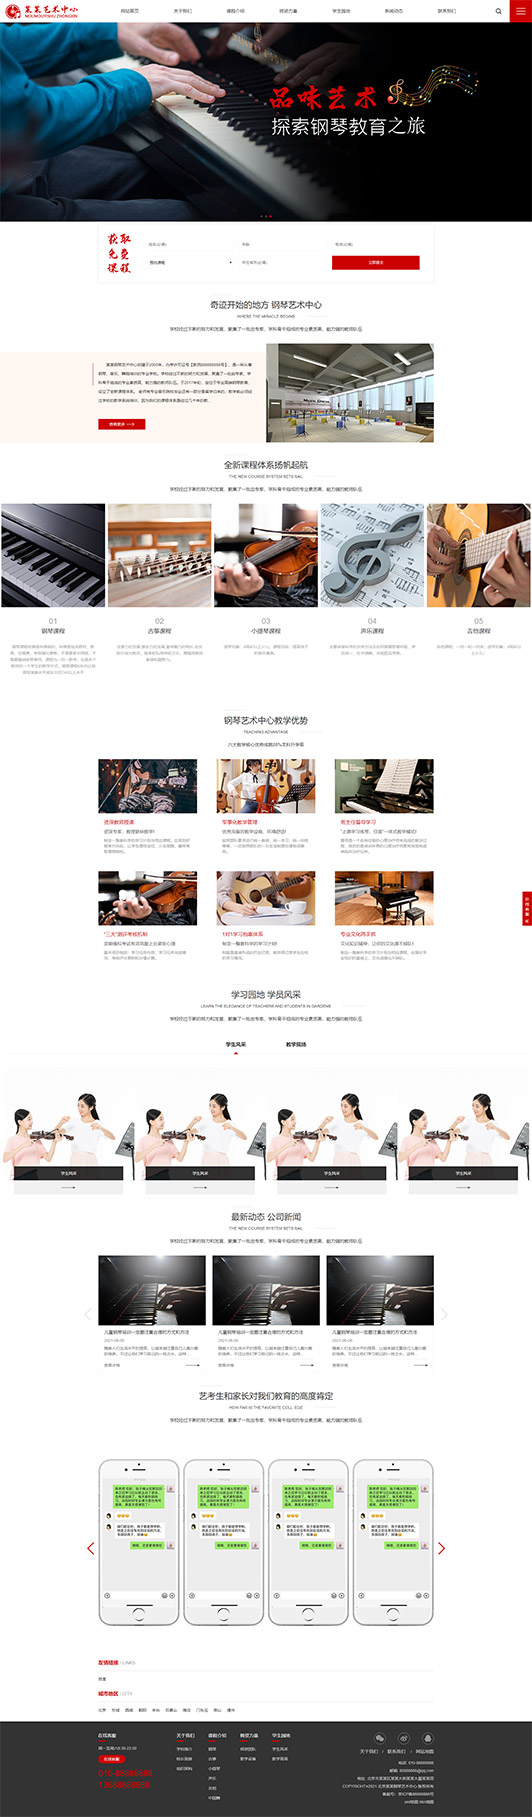 张家口钢琴艺术培训公司响应式企业网站